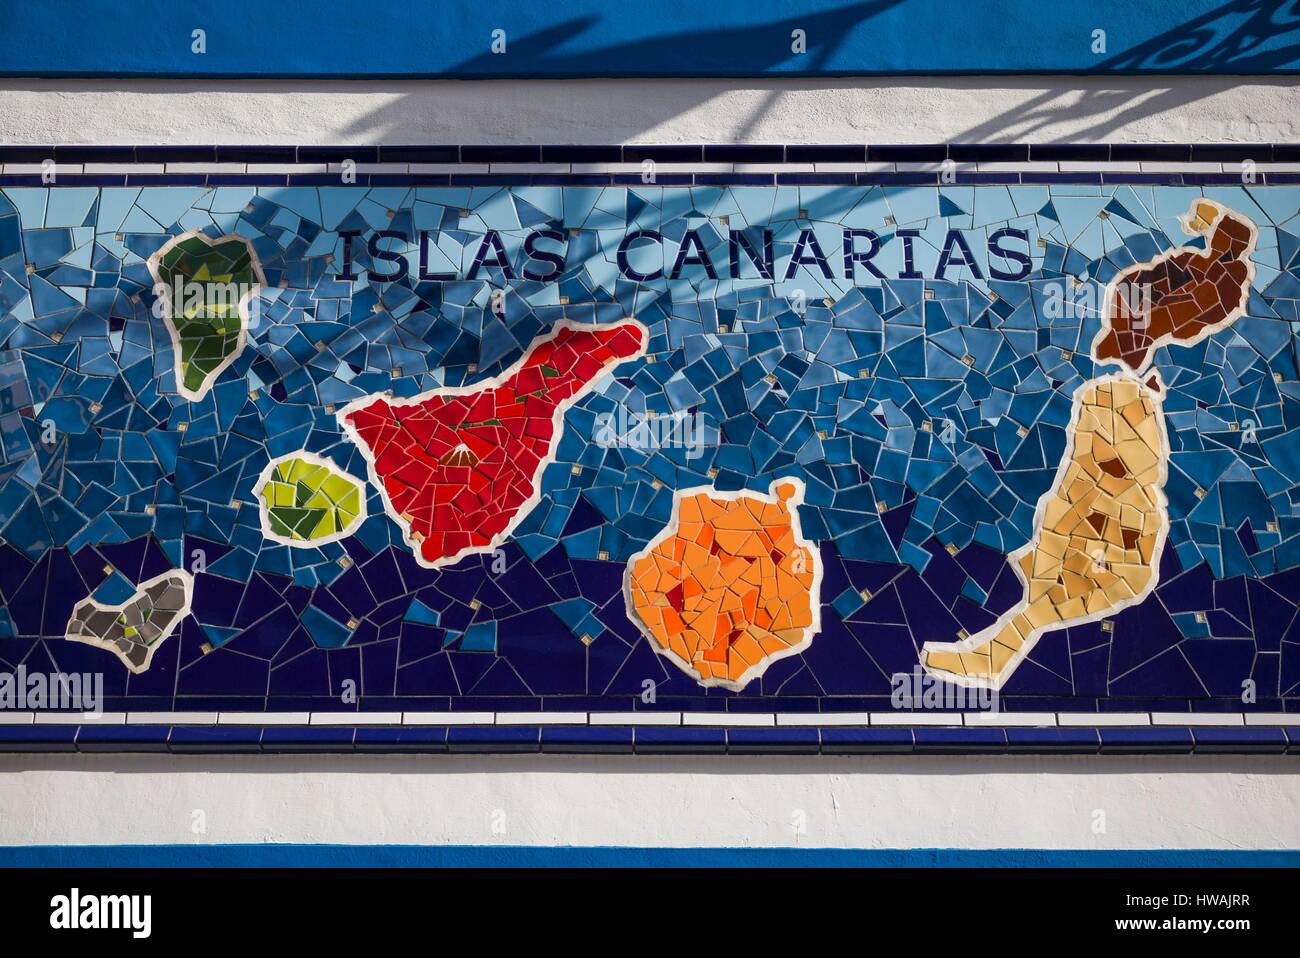 L'Espagne, Iles Canaries, Tenerife, Puerto de la Cruz, fresque avec Canaries site Banque D'Images